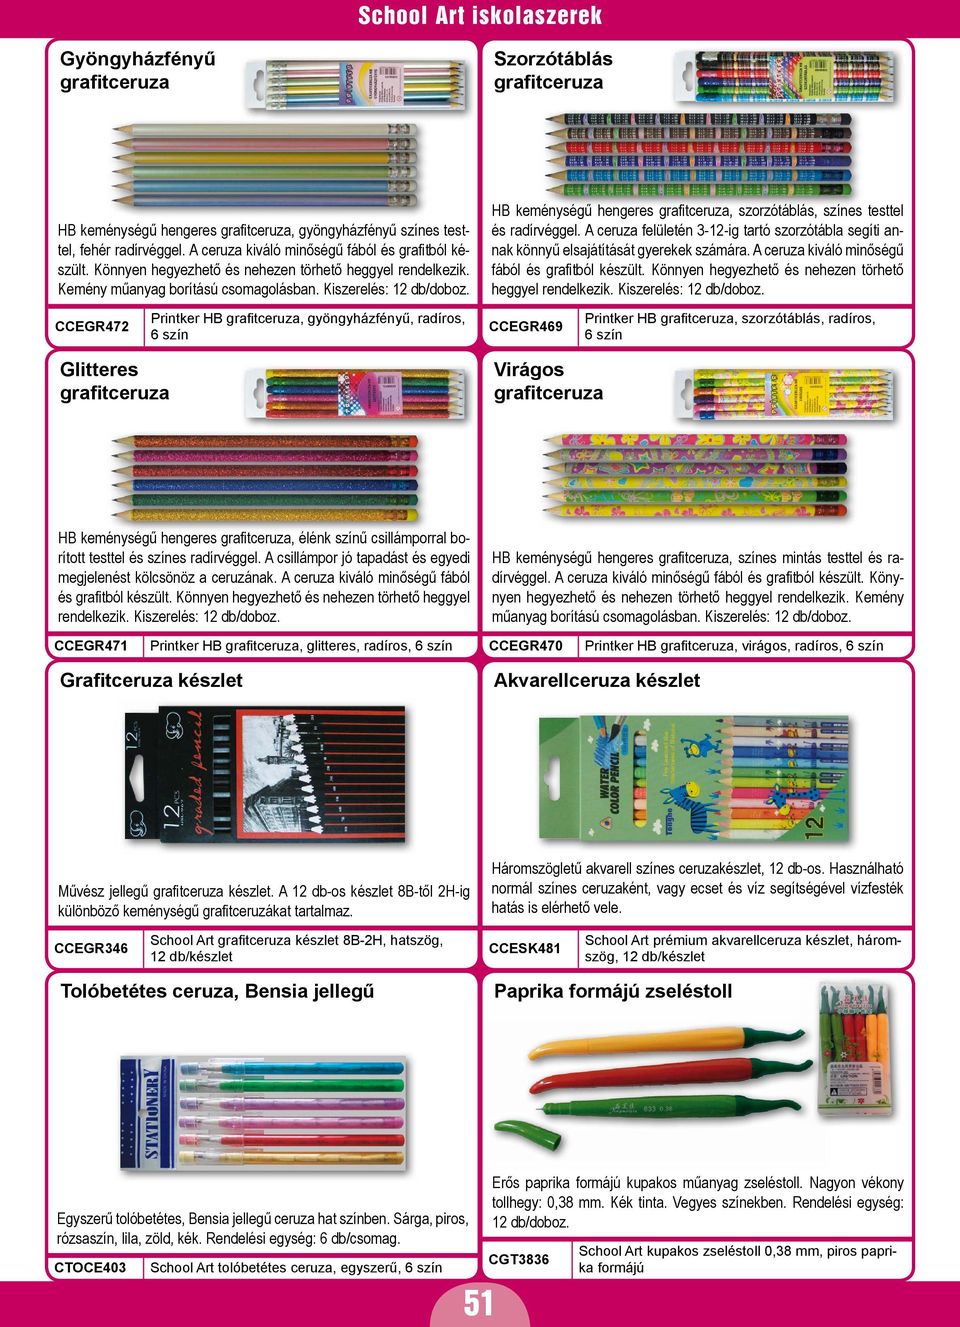 HB keménységű hengeres grafitceruza, szorzótáblás, színes testtel és radírvéggel. A ceruza felületén 3-12-ig tartó szorzótábla segíti annak könnyű elsajátítását gyerekek számára.